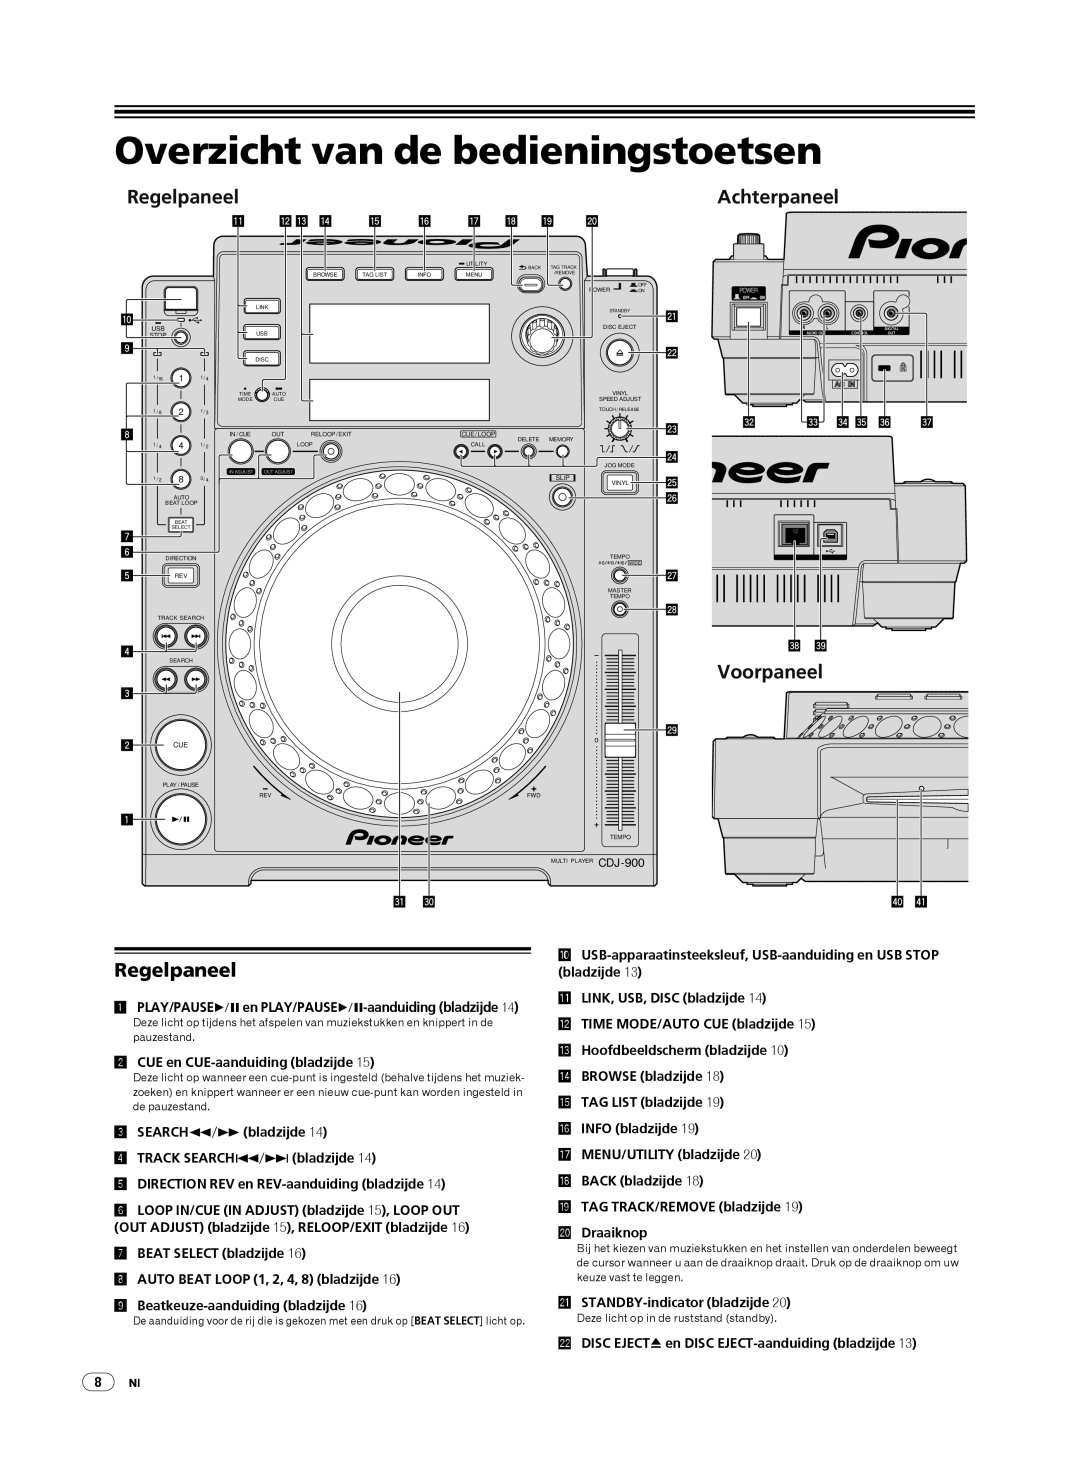 Pioneer CDJ-900, Multi Player Overzicht van de bedieningstoetsen, Regelpaneel, Achterpaneel, Voorpaneel 